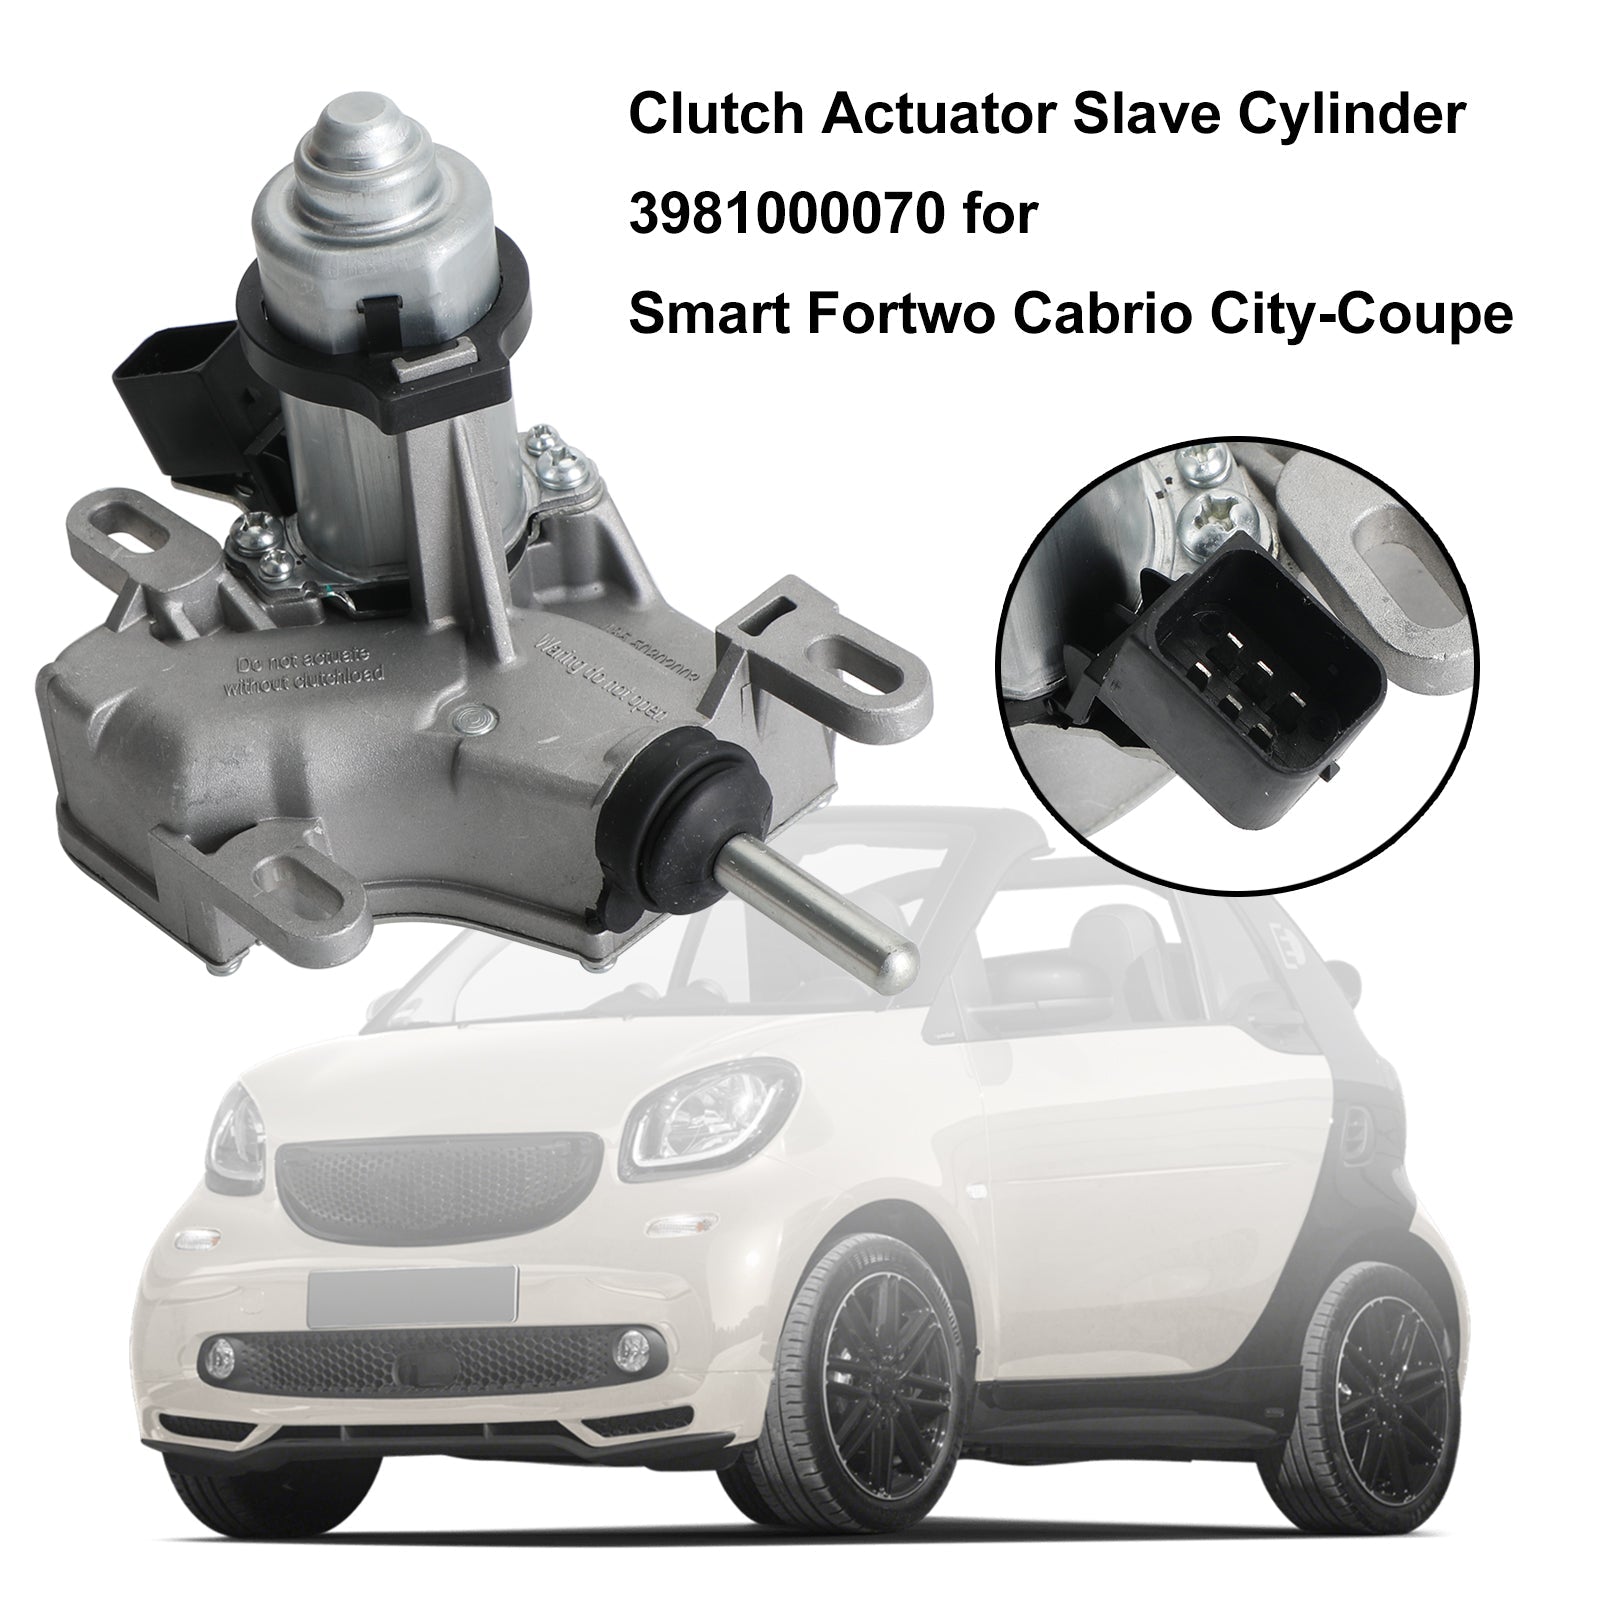 Smart Fortwo Cabrio City-Coupe Crayat Attuatore Cilindro Slave 3981000070